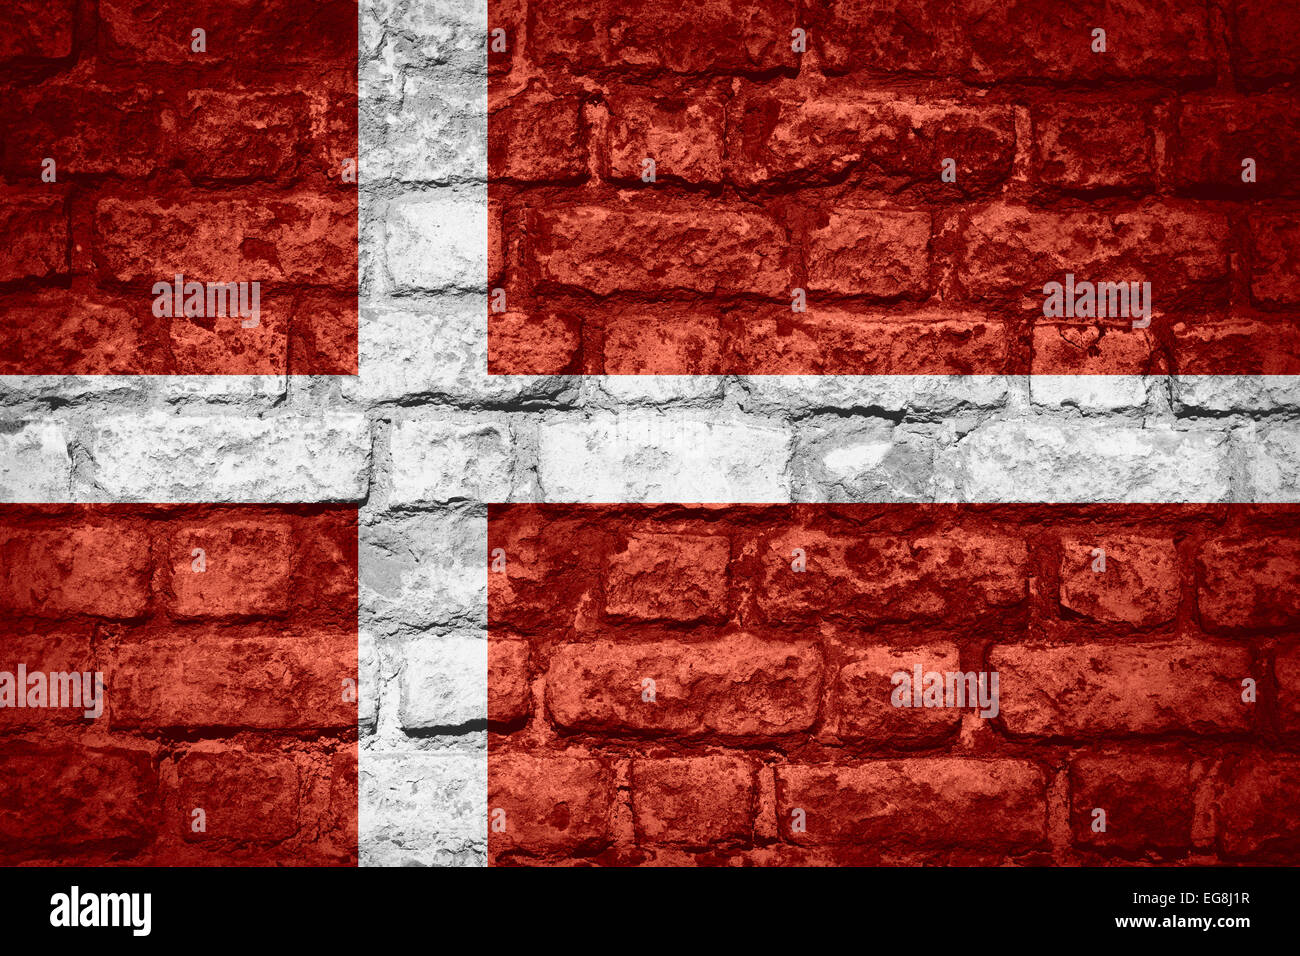 flag of Denmark or Danish banner on brick texture Stock Photo